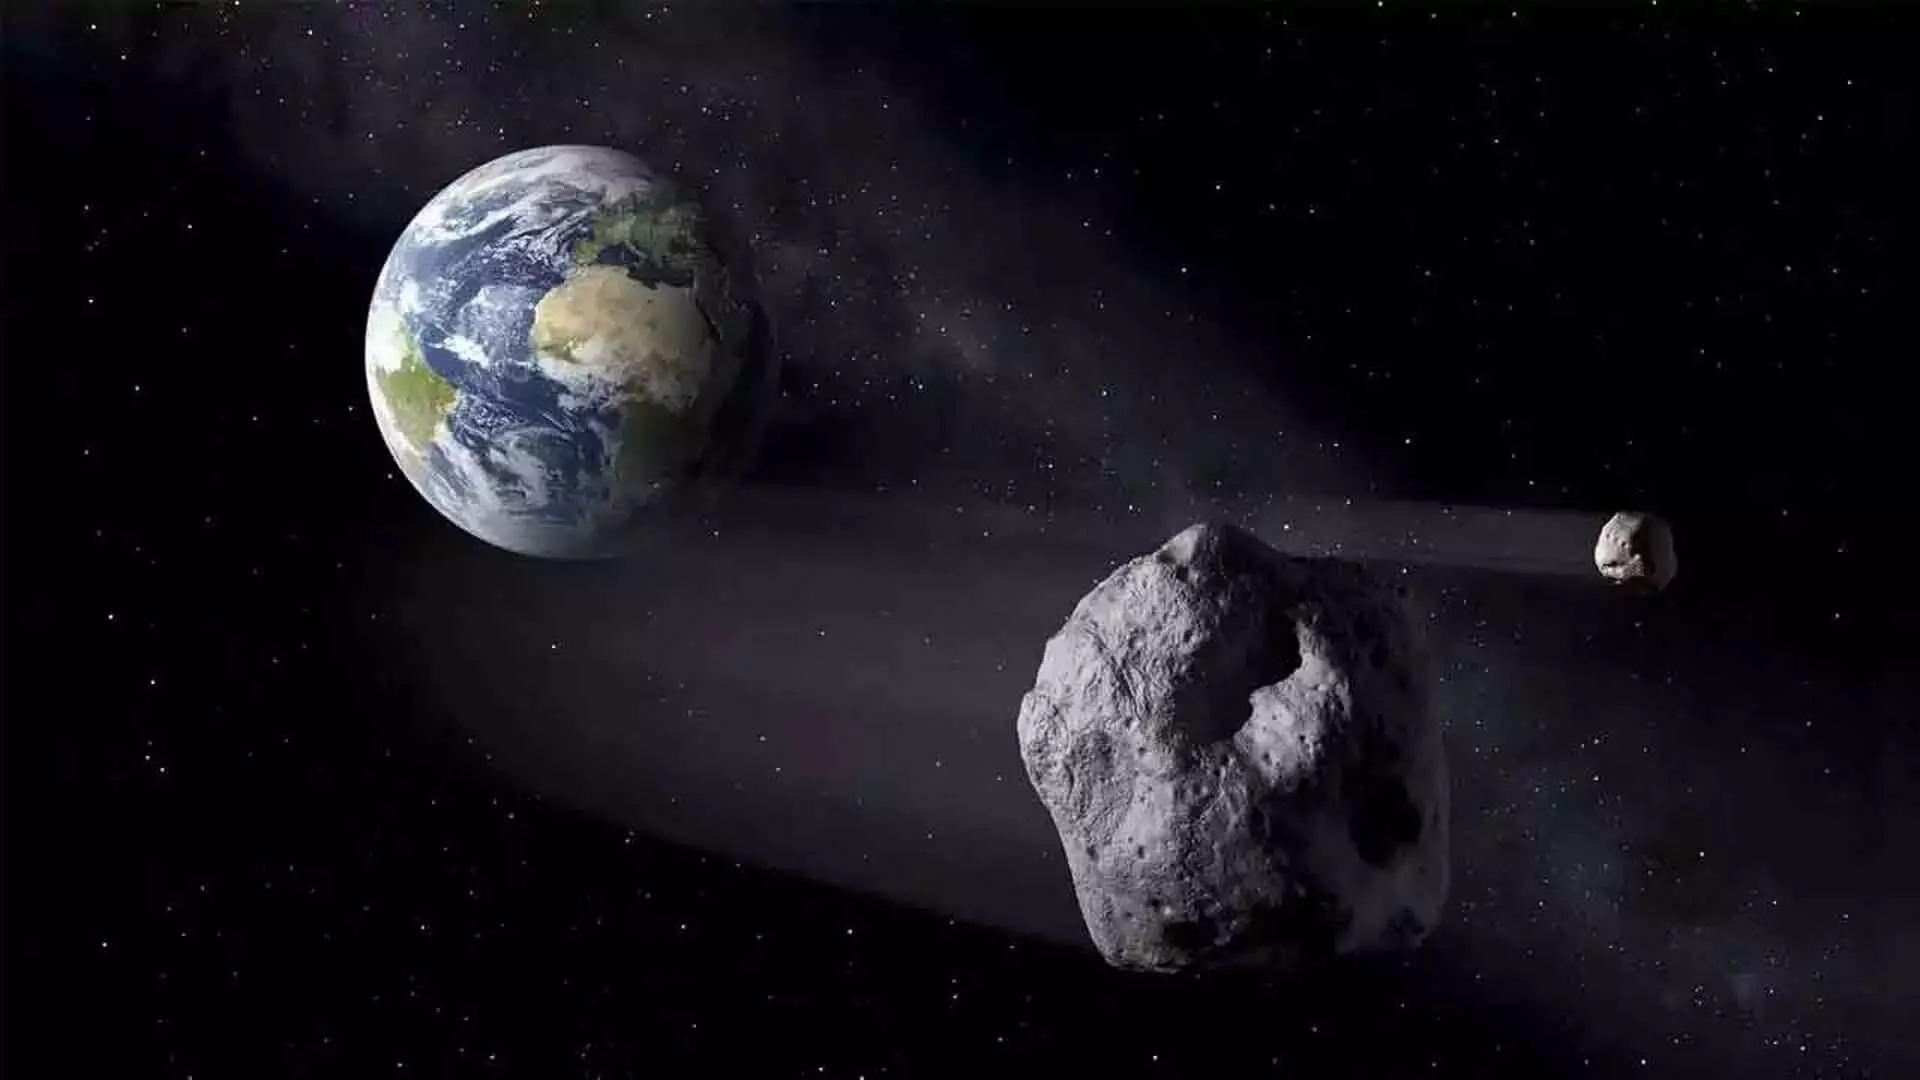 पृथ्वी के पास से दो खतरनाक asteroids गुजरेंगे- NASA